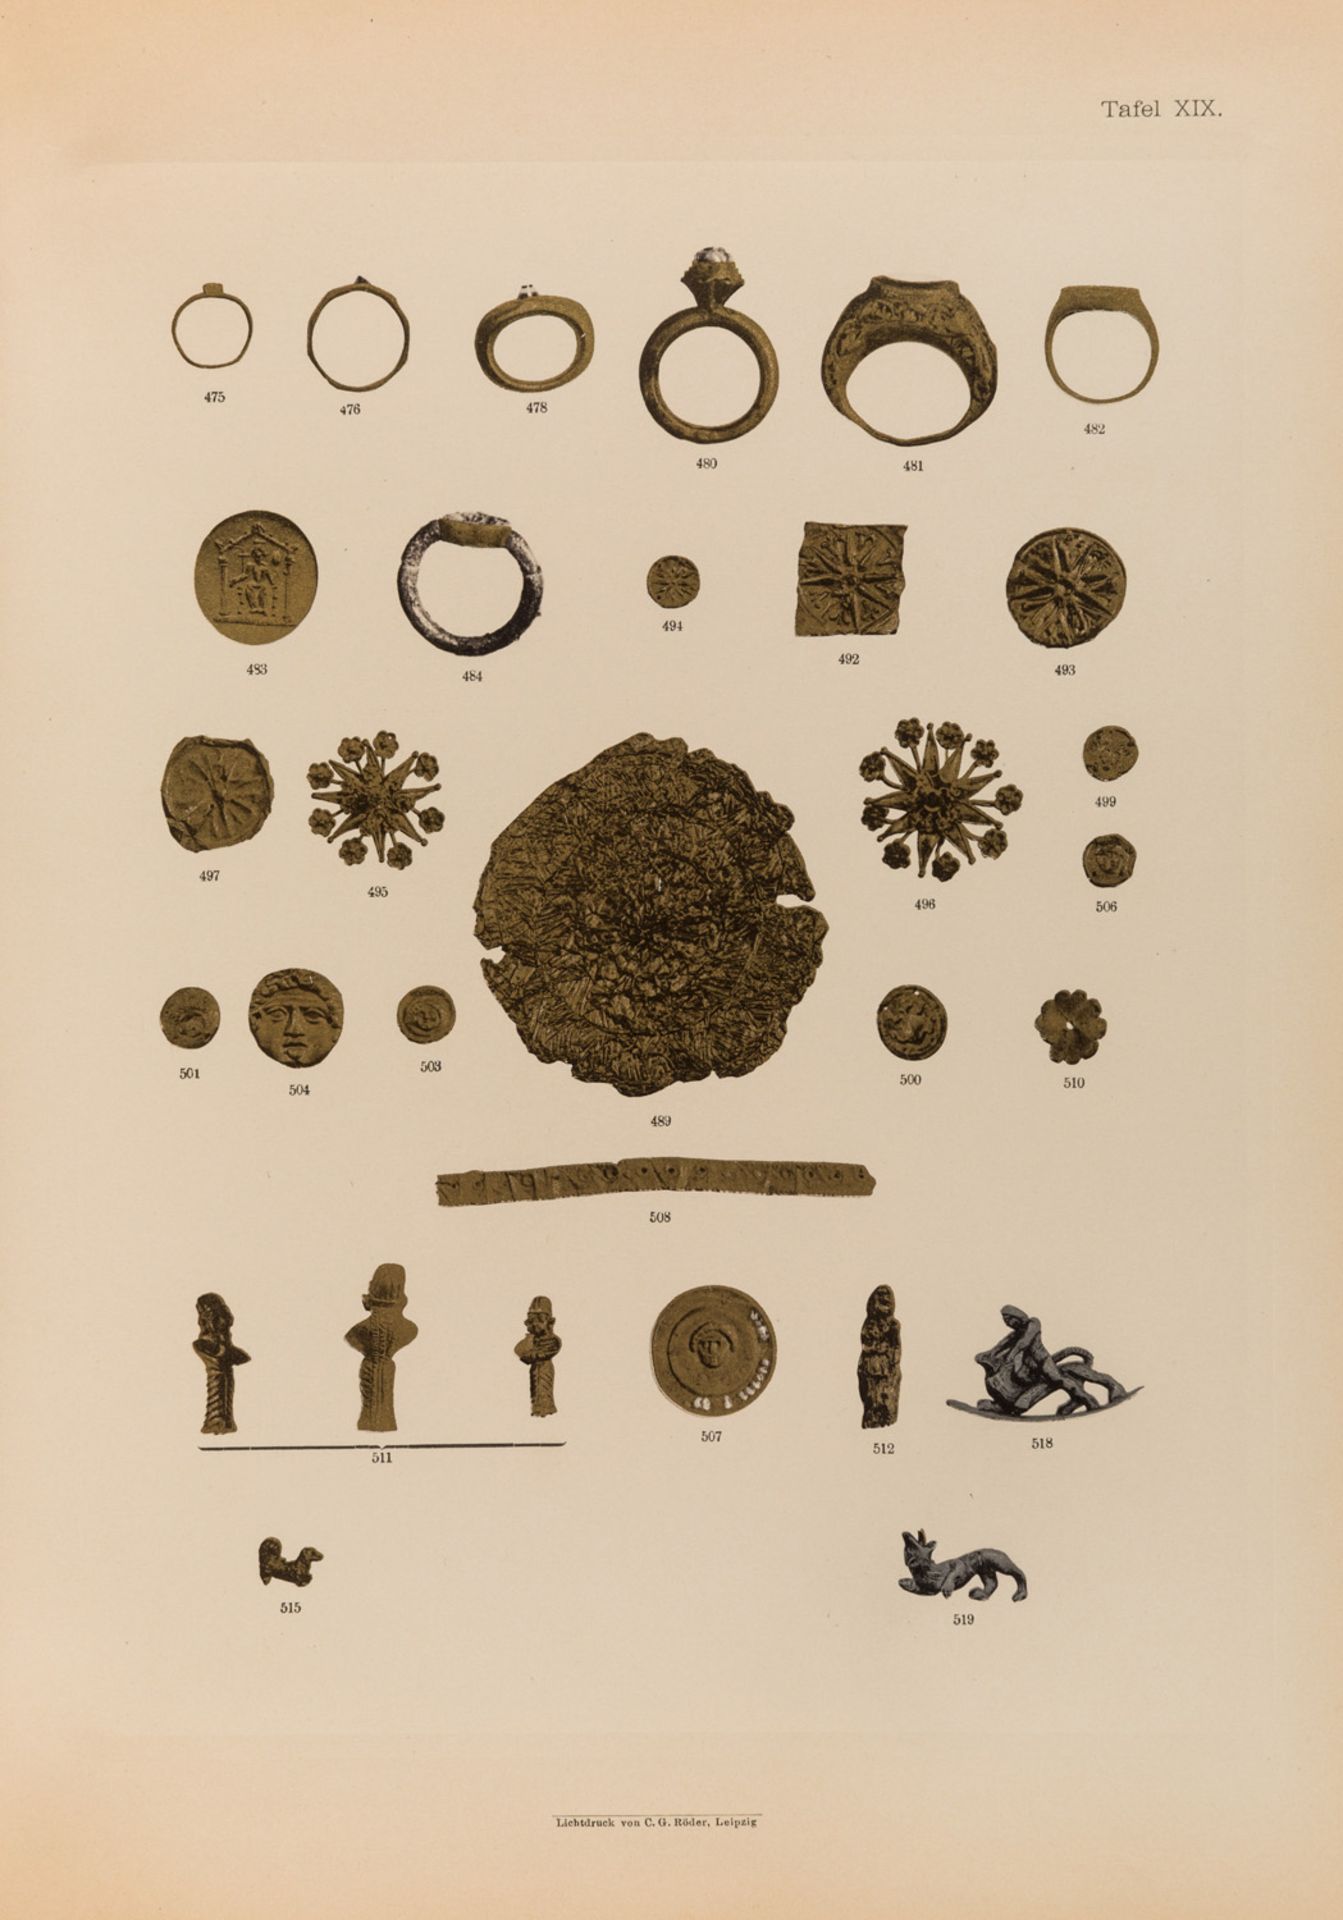 KLASSICH-ANTIKE GOLDSCHMIEDEARBEITEN IM BESITZE A.J. VON NELIDOW, 1903 - Bild 11 aus 17